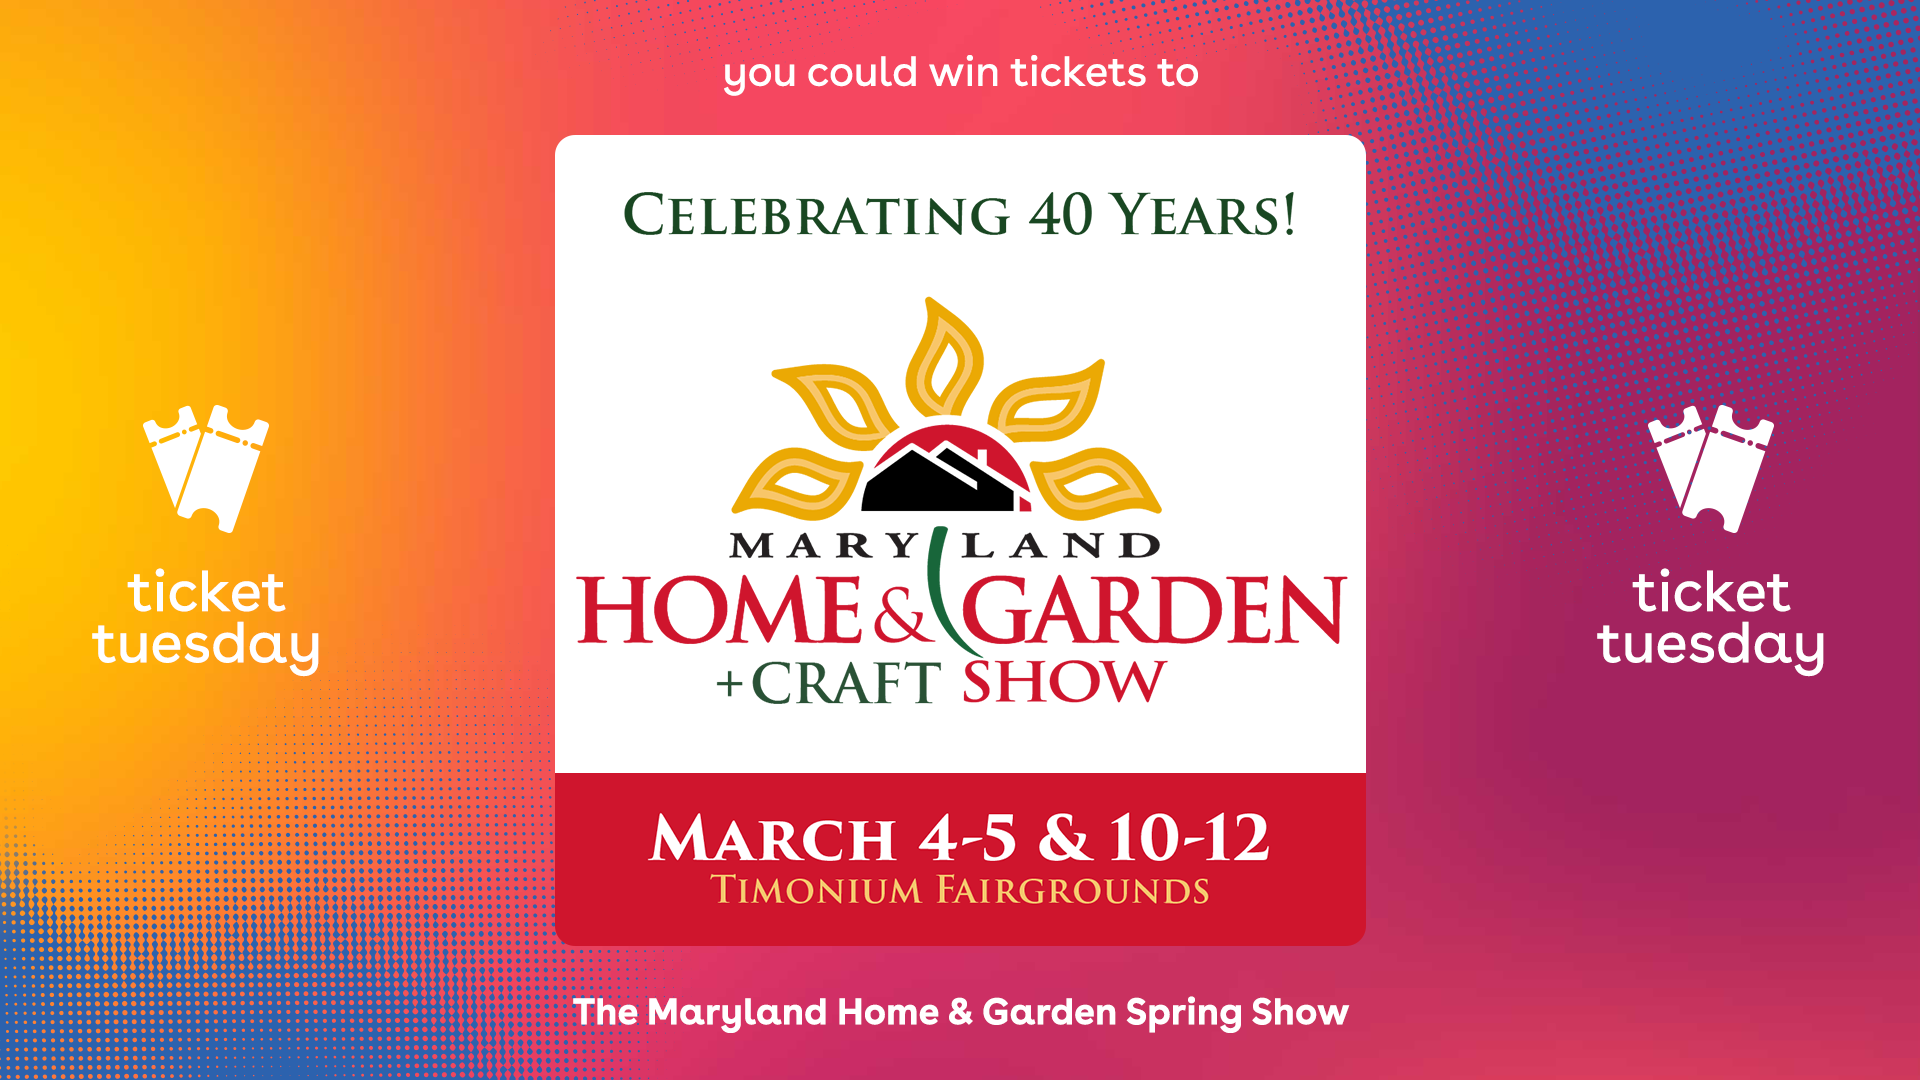 Maryland Home & Garden logo featuring a golden sunflower